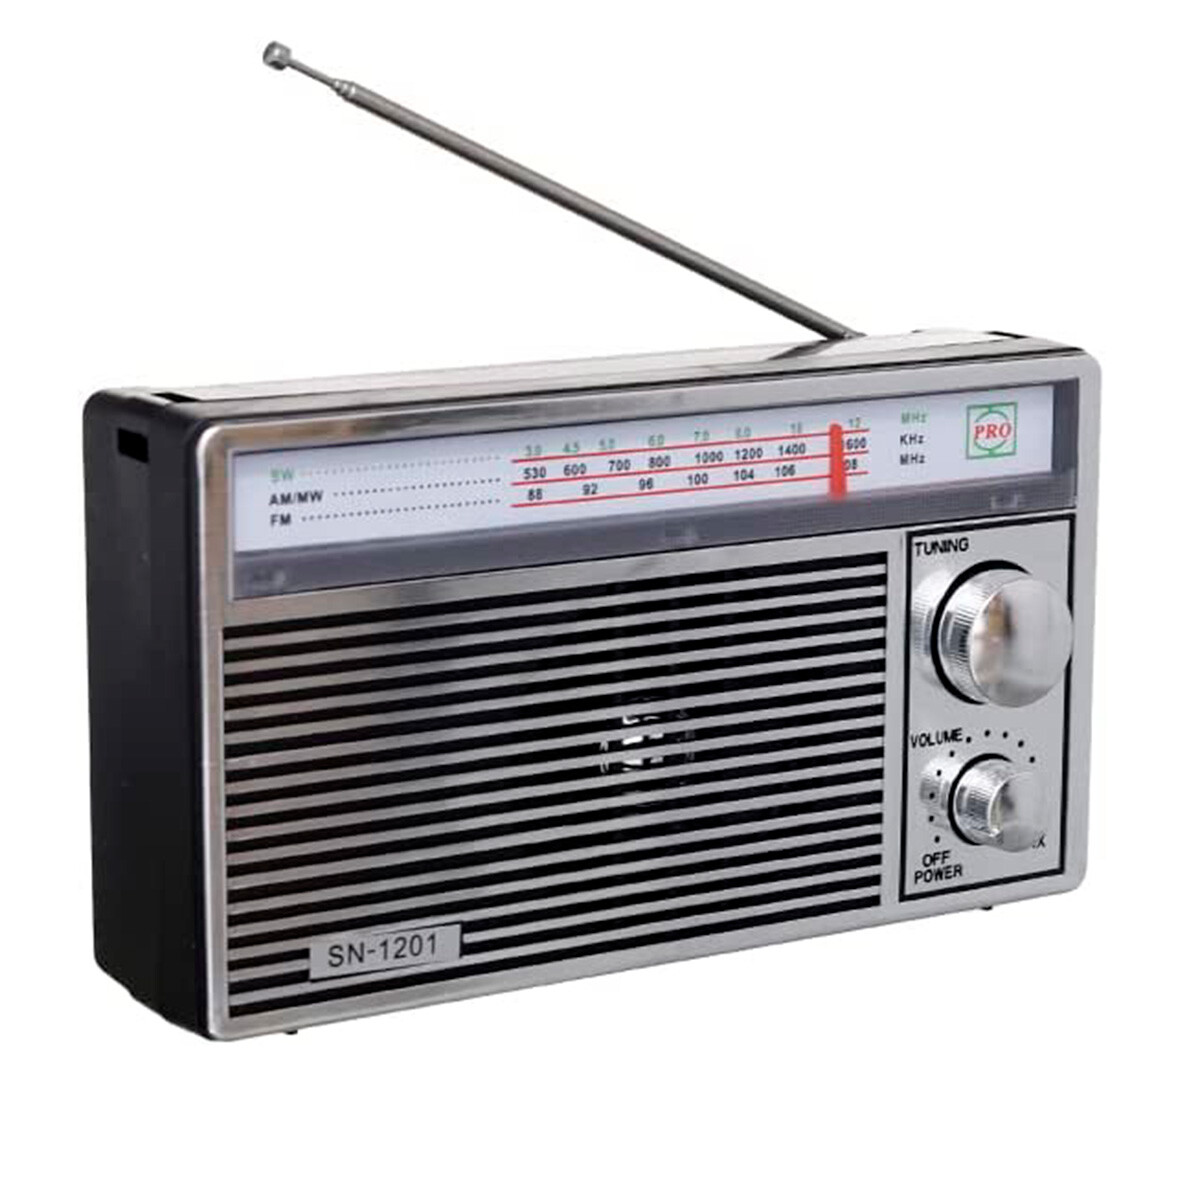 Radio Retro Portátil Am/fm Corriente y Pilas SN-1201 - 001 